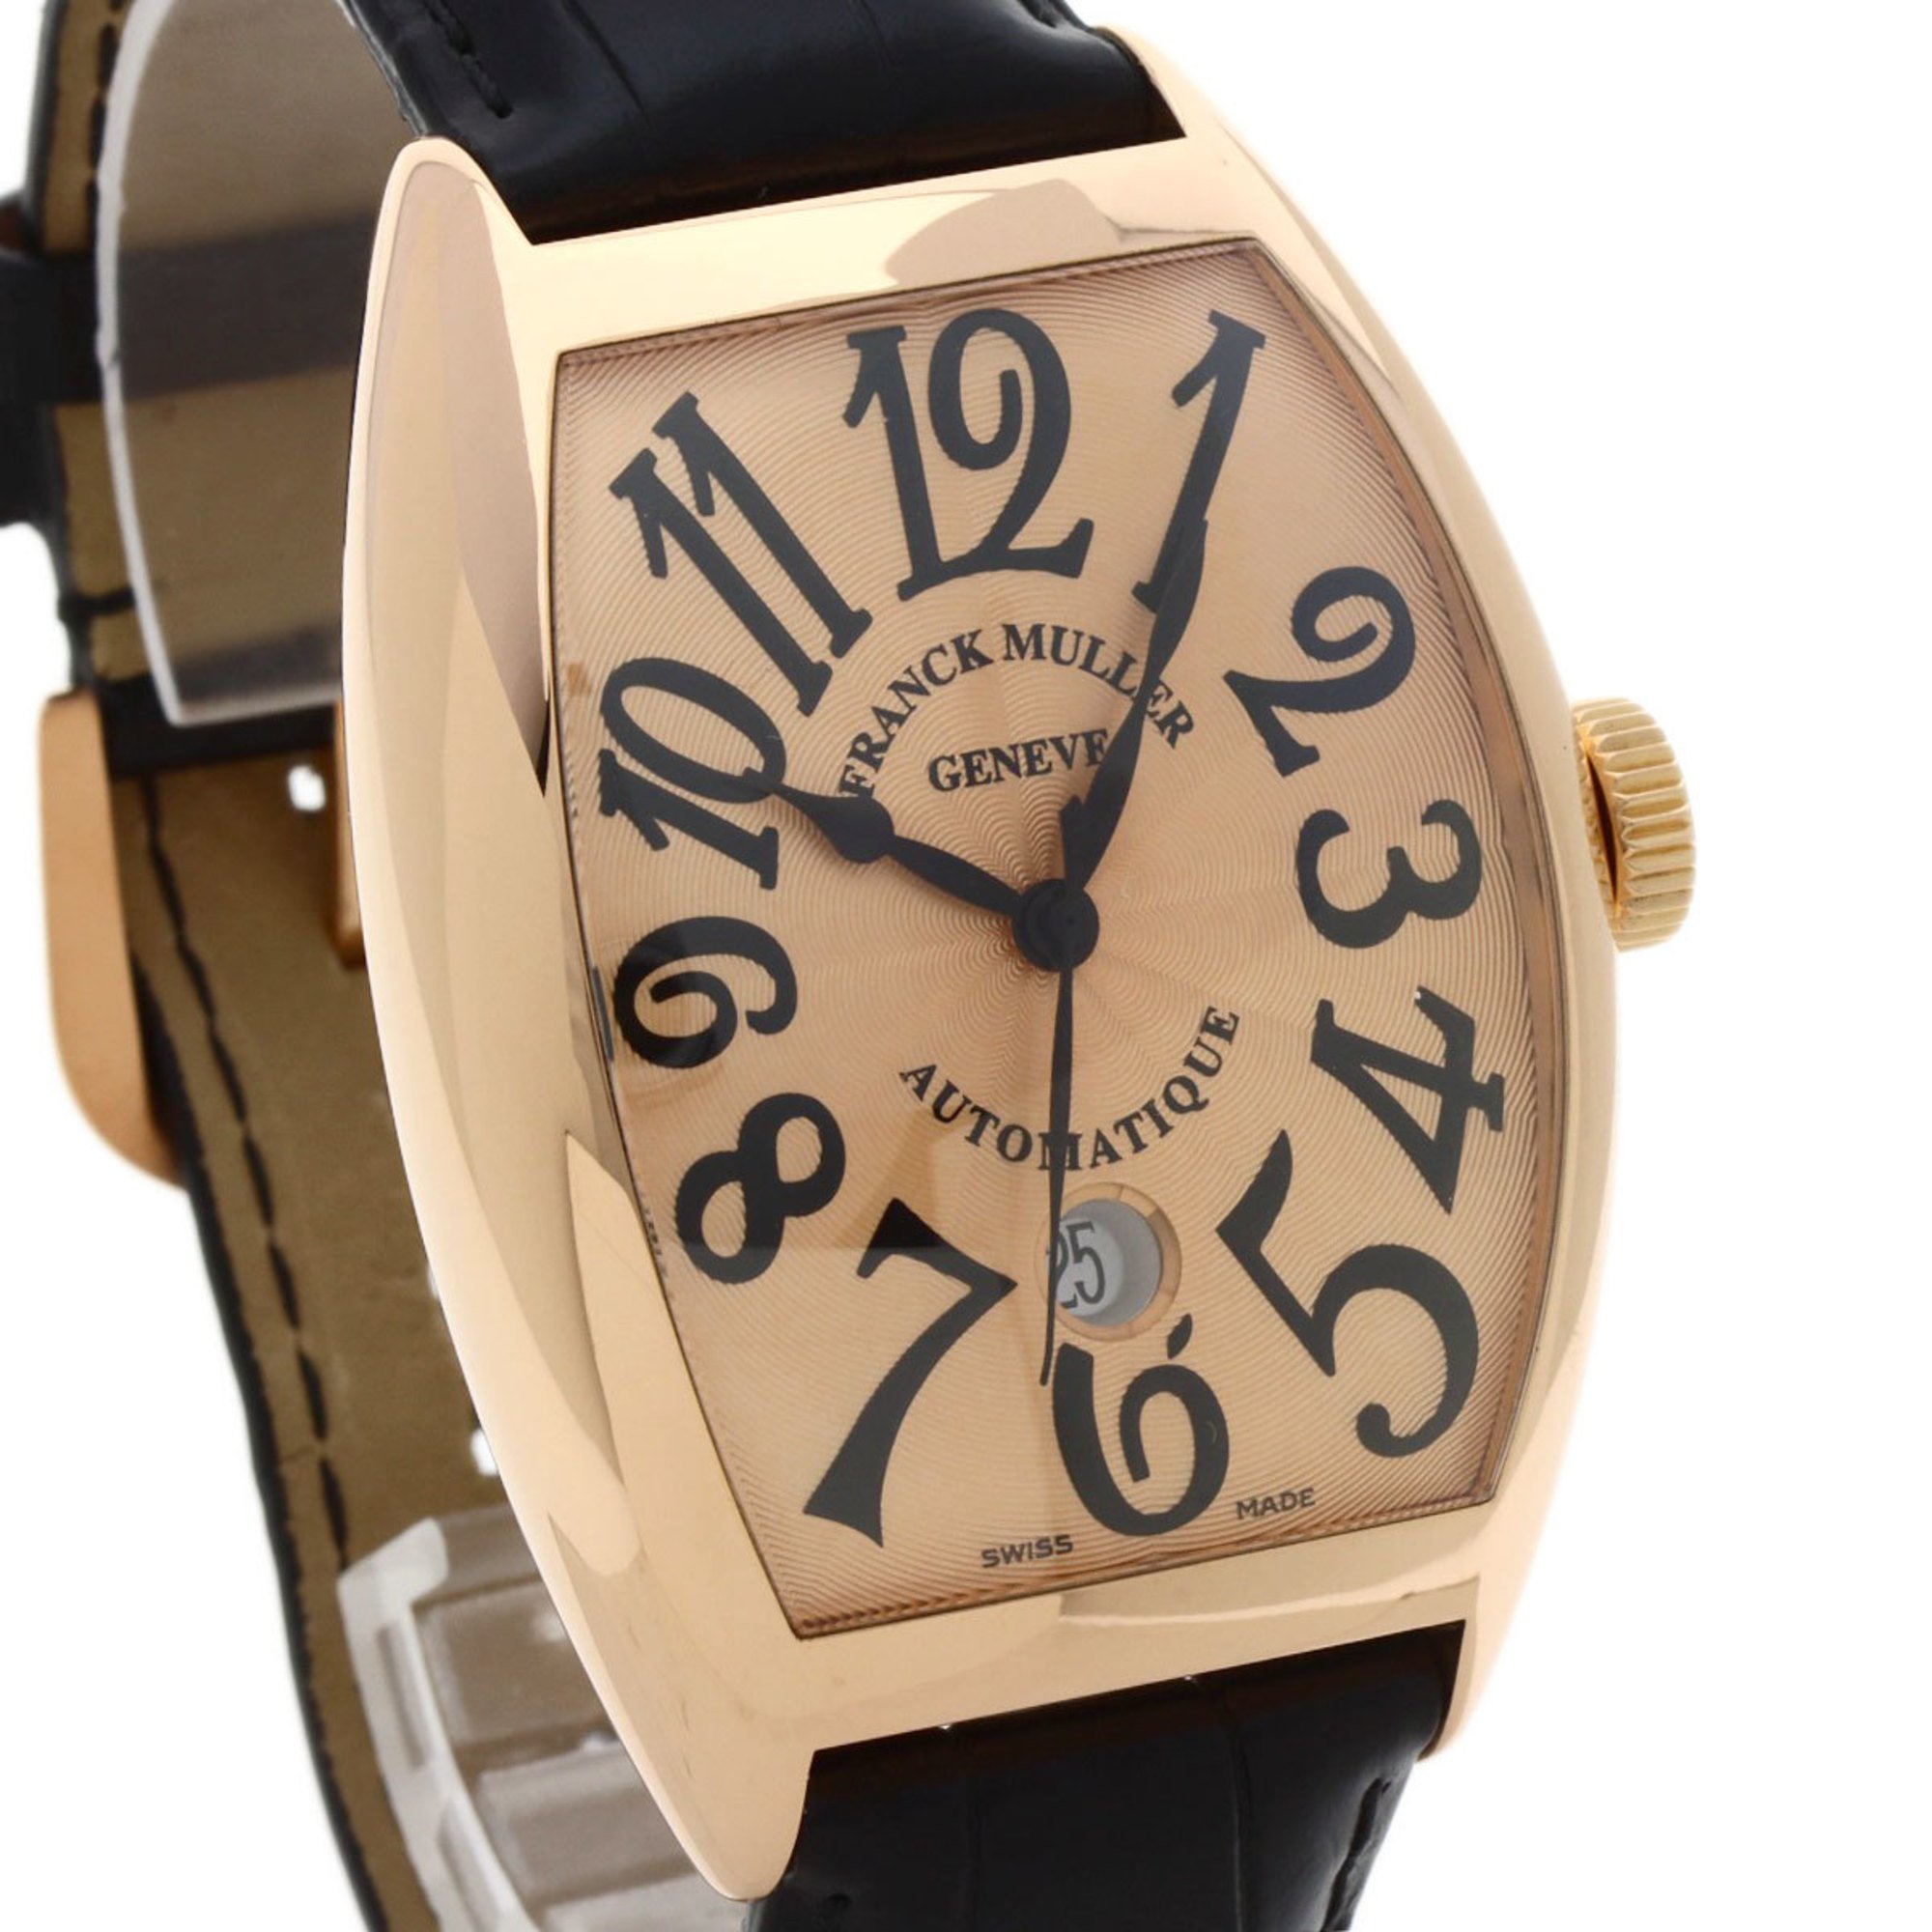 Franck Muller 8880 B SCDT Tonneau Curvex Date Watch K18 Pink Gold/Leather Men's FRANCK MULLER